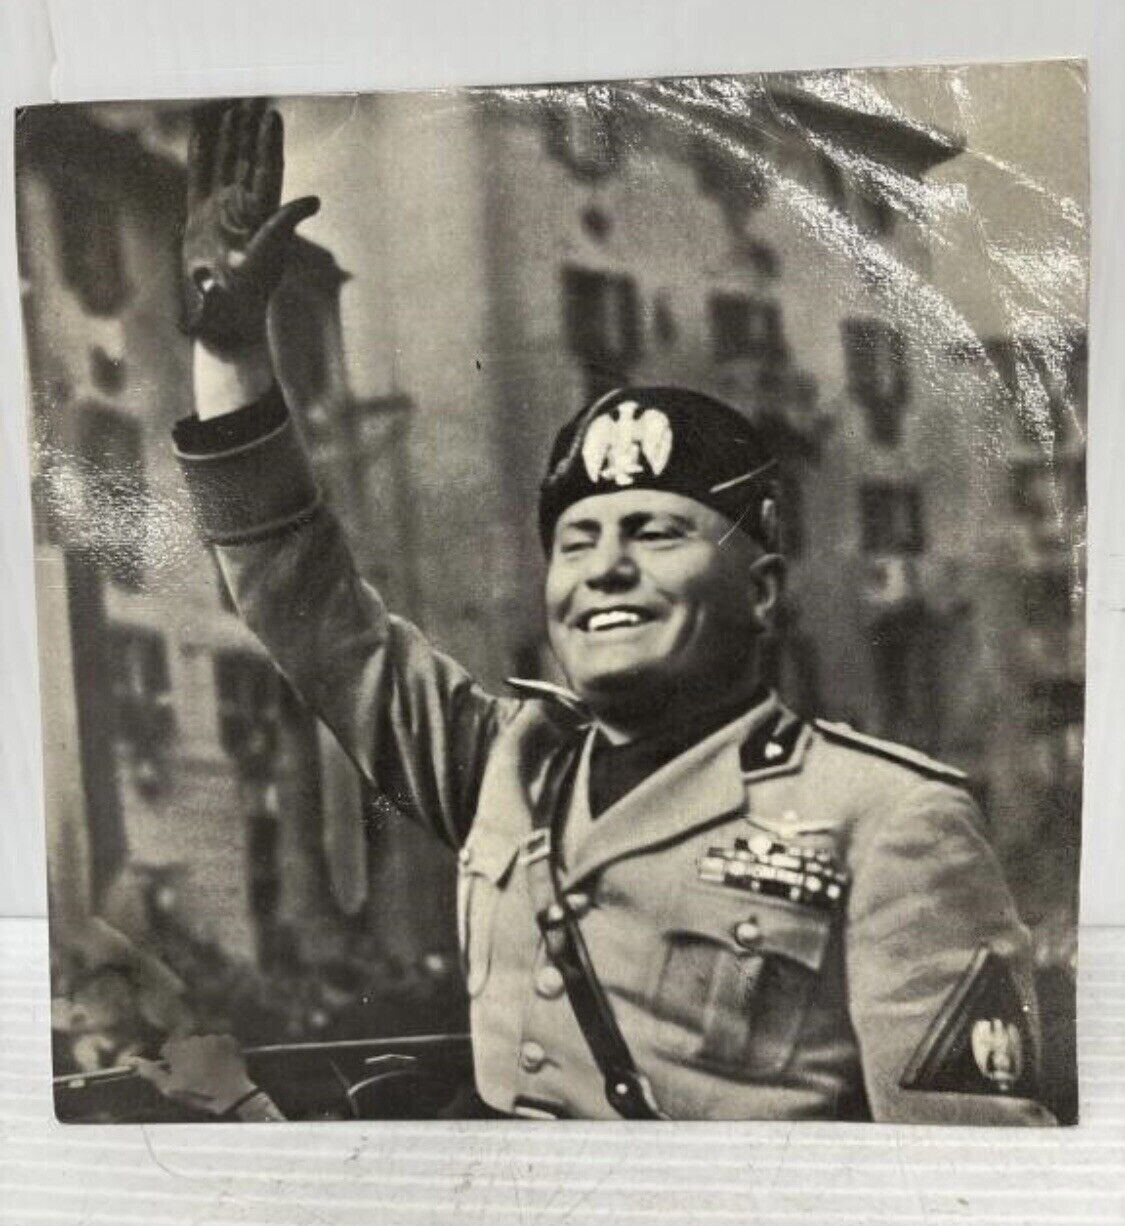 WW2 Benito Mussolini  “I Discorsi” Speeches Recorded December 16, 1944